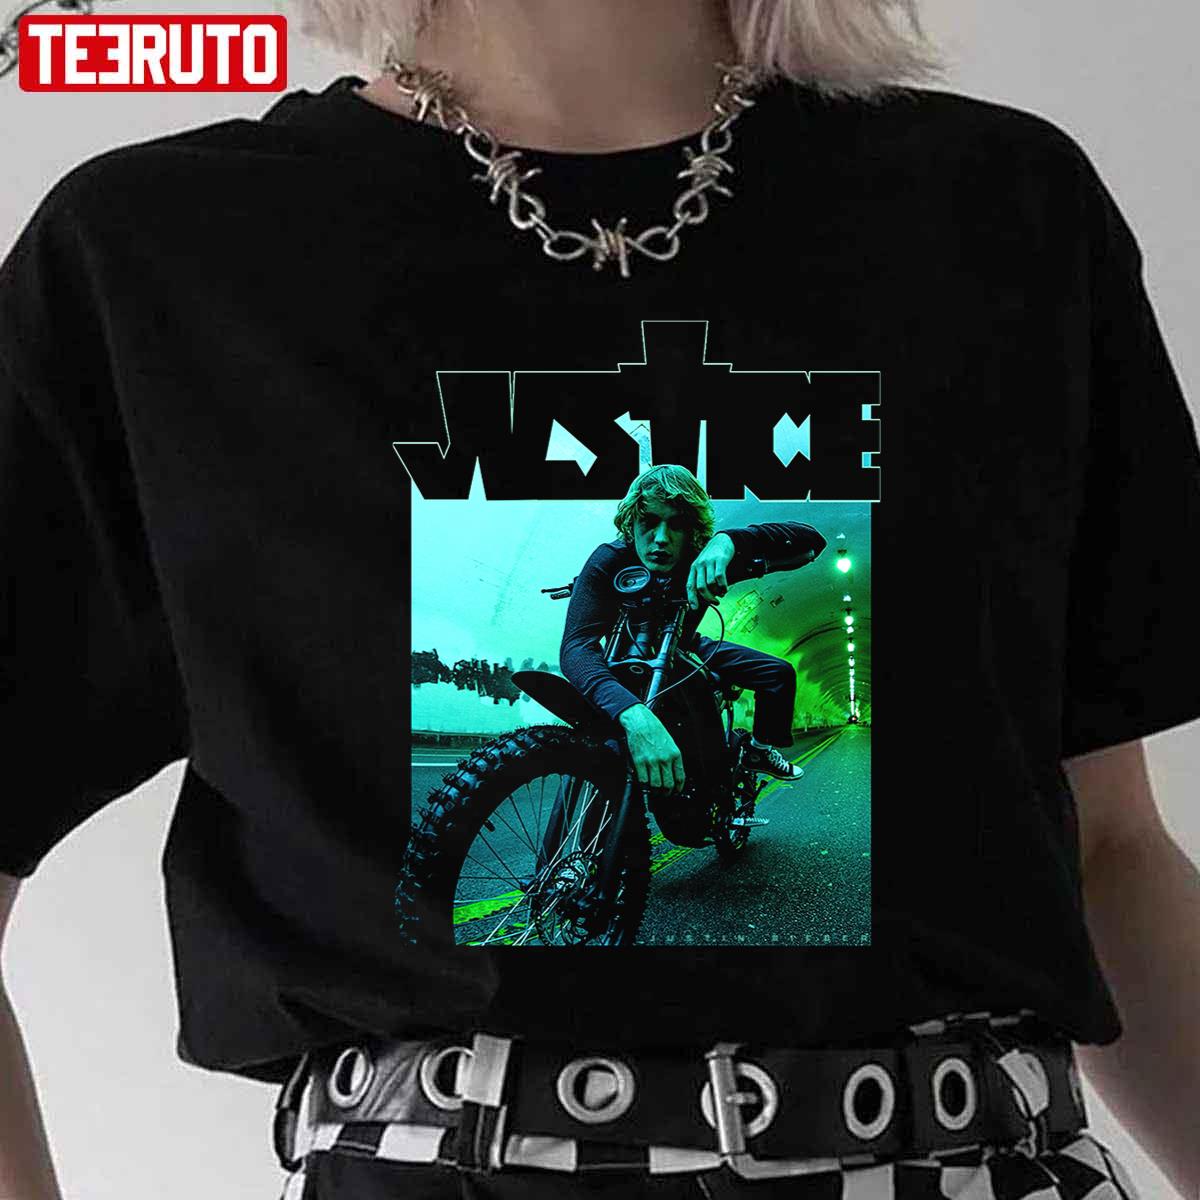 Dirt Bike Photo Justin Bieber Merch Unisex T-Shirt